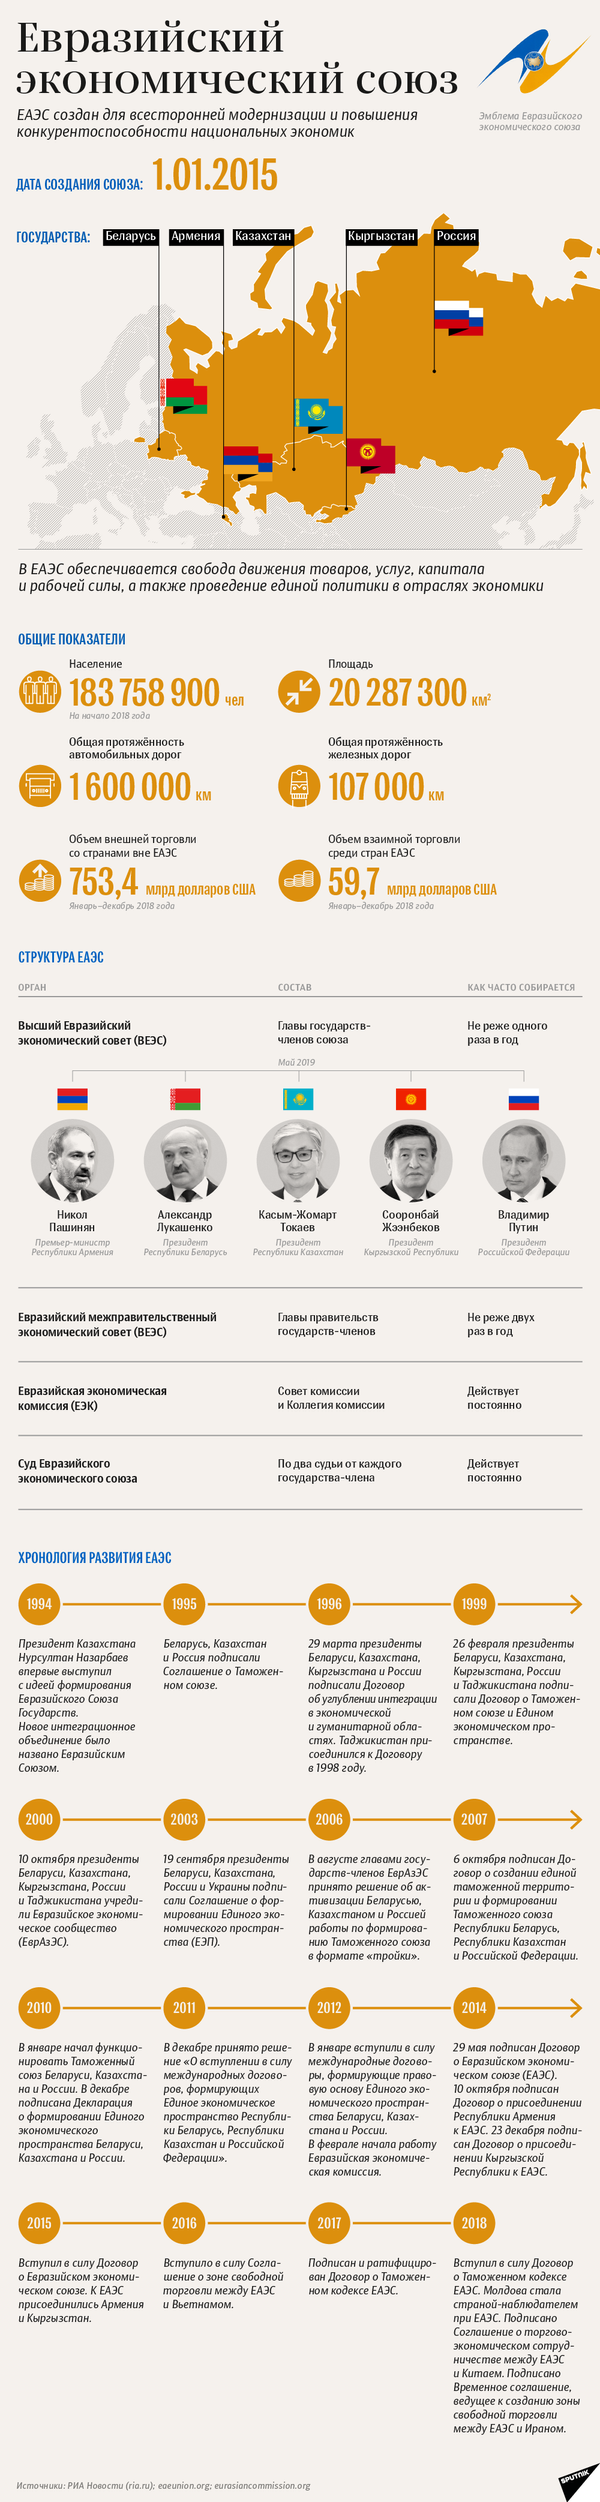 ЕАЭС: общие показатели, структура и этапы развития | Инфографика sputnik.by - Sputnik Южная Осетия